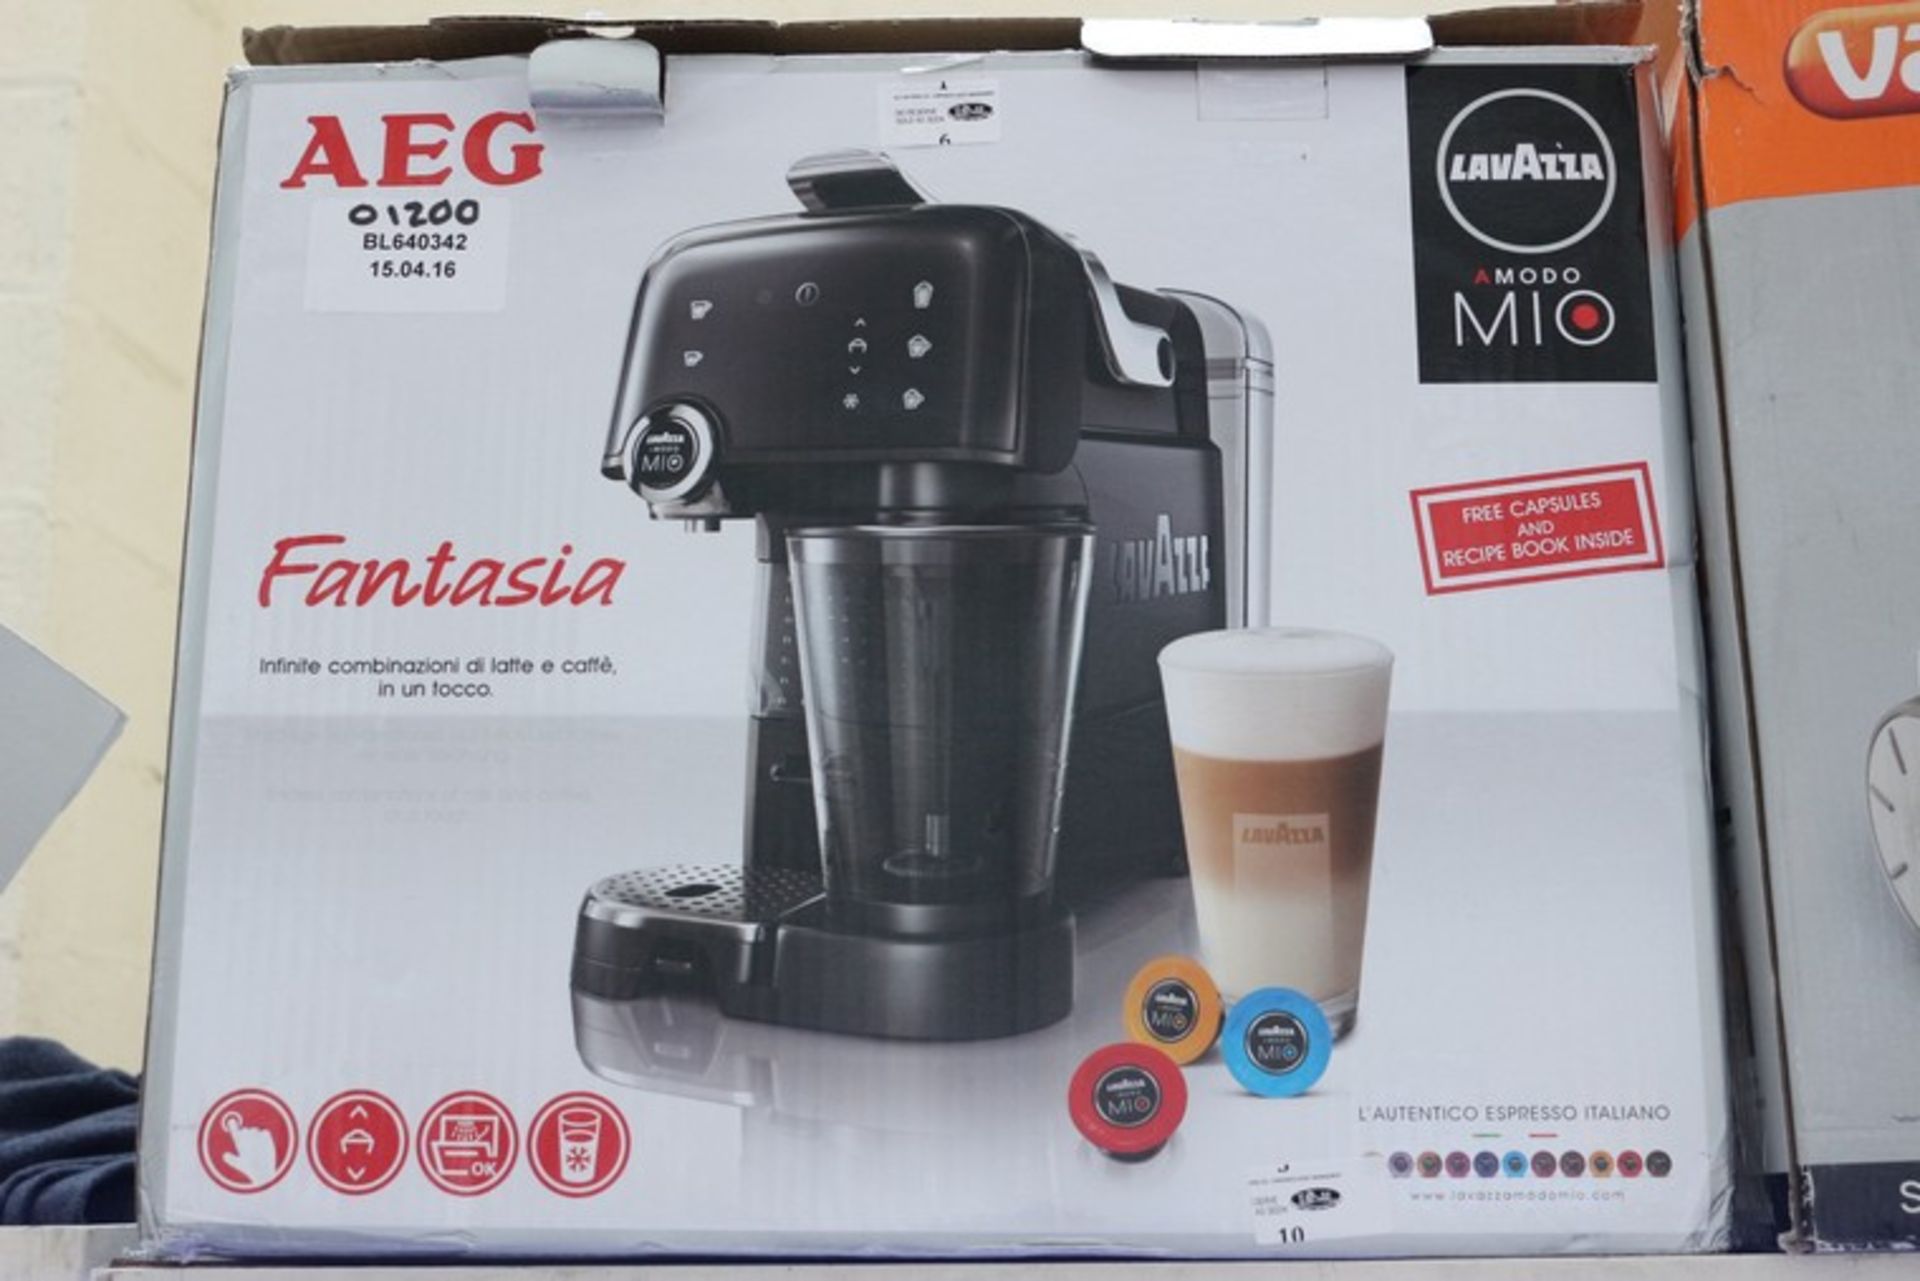 1 x BOXED AEG LAVAZZA AMODO MIO FANTASIA CAPPUCCINO COFFEE MAKER RRP £120 (15.4.16) *PLEASE NOTE